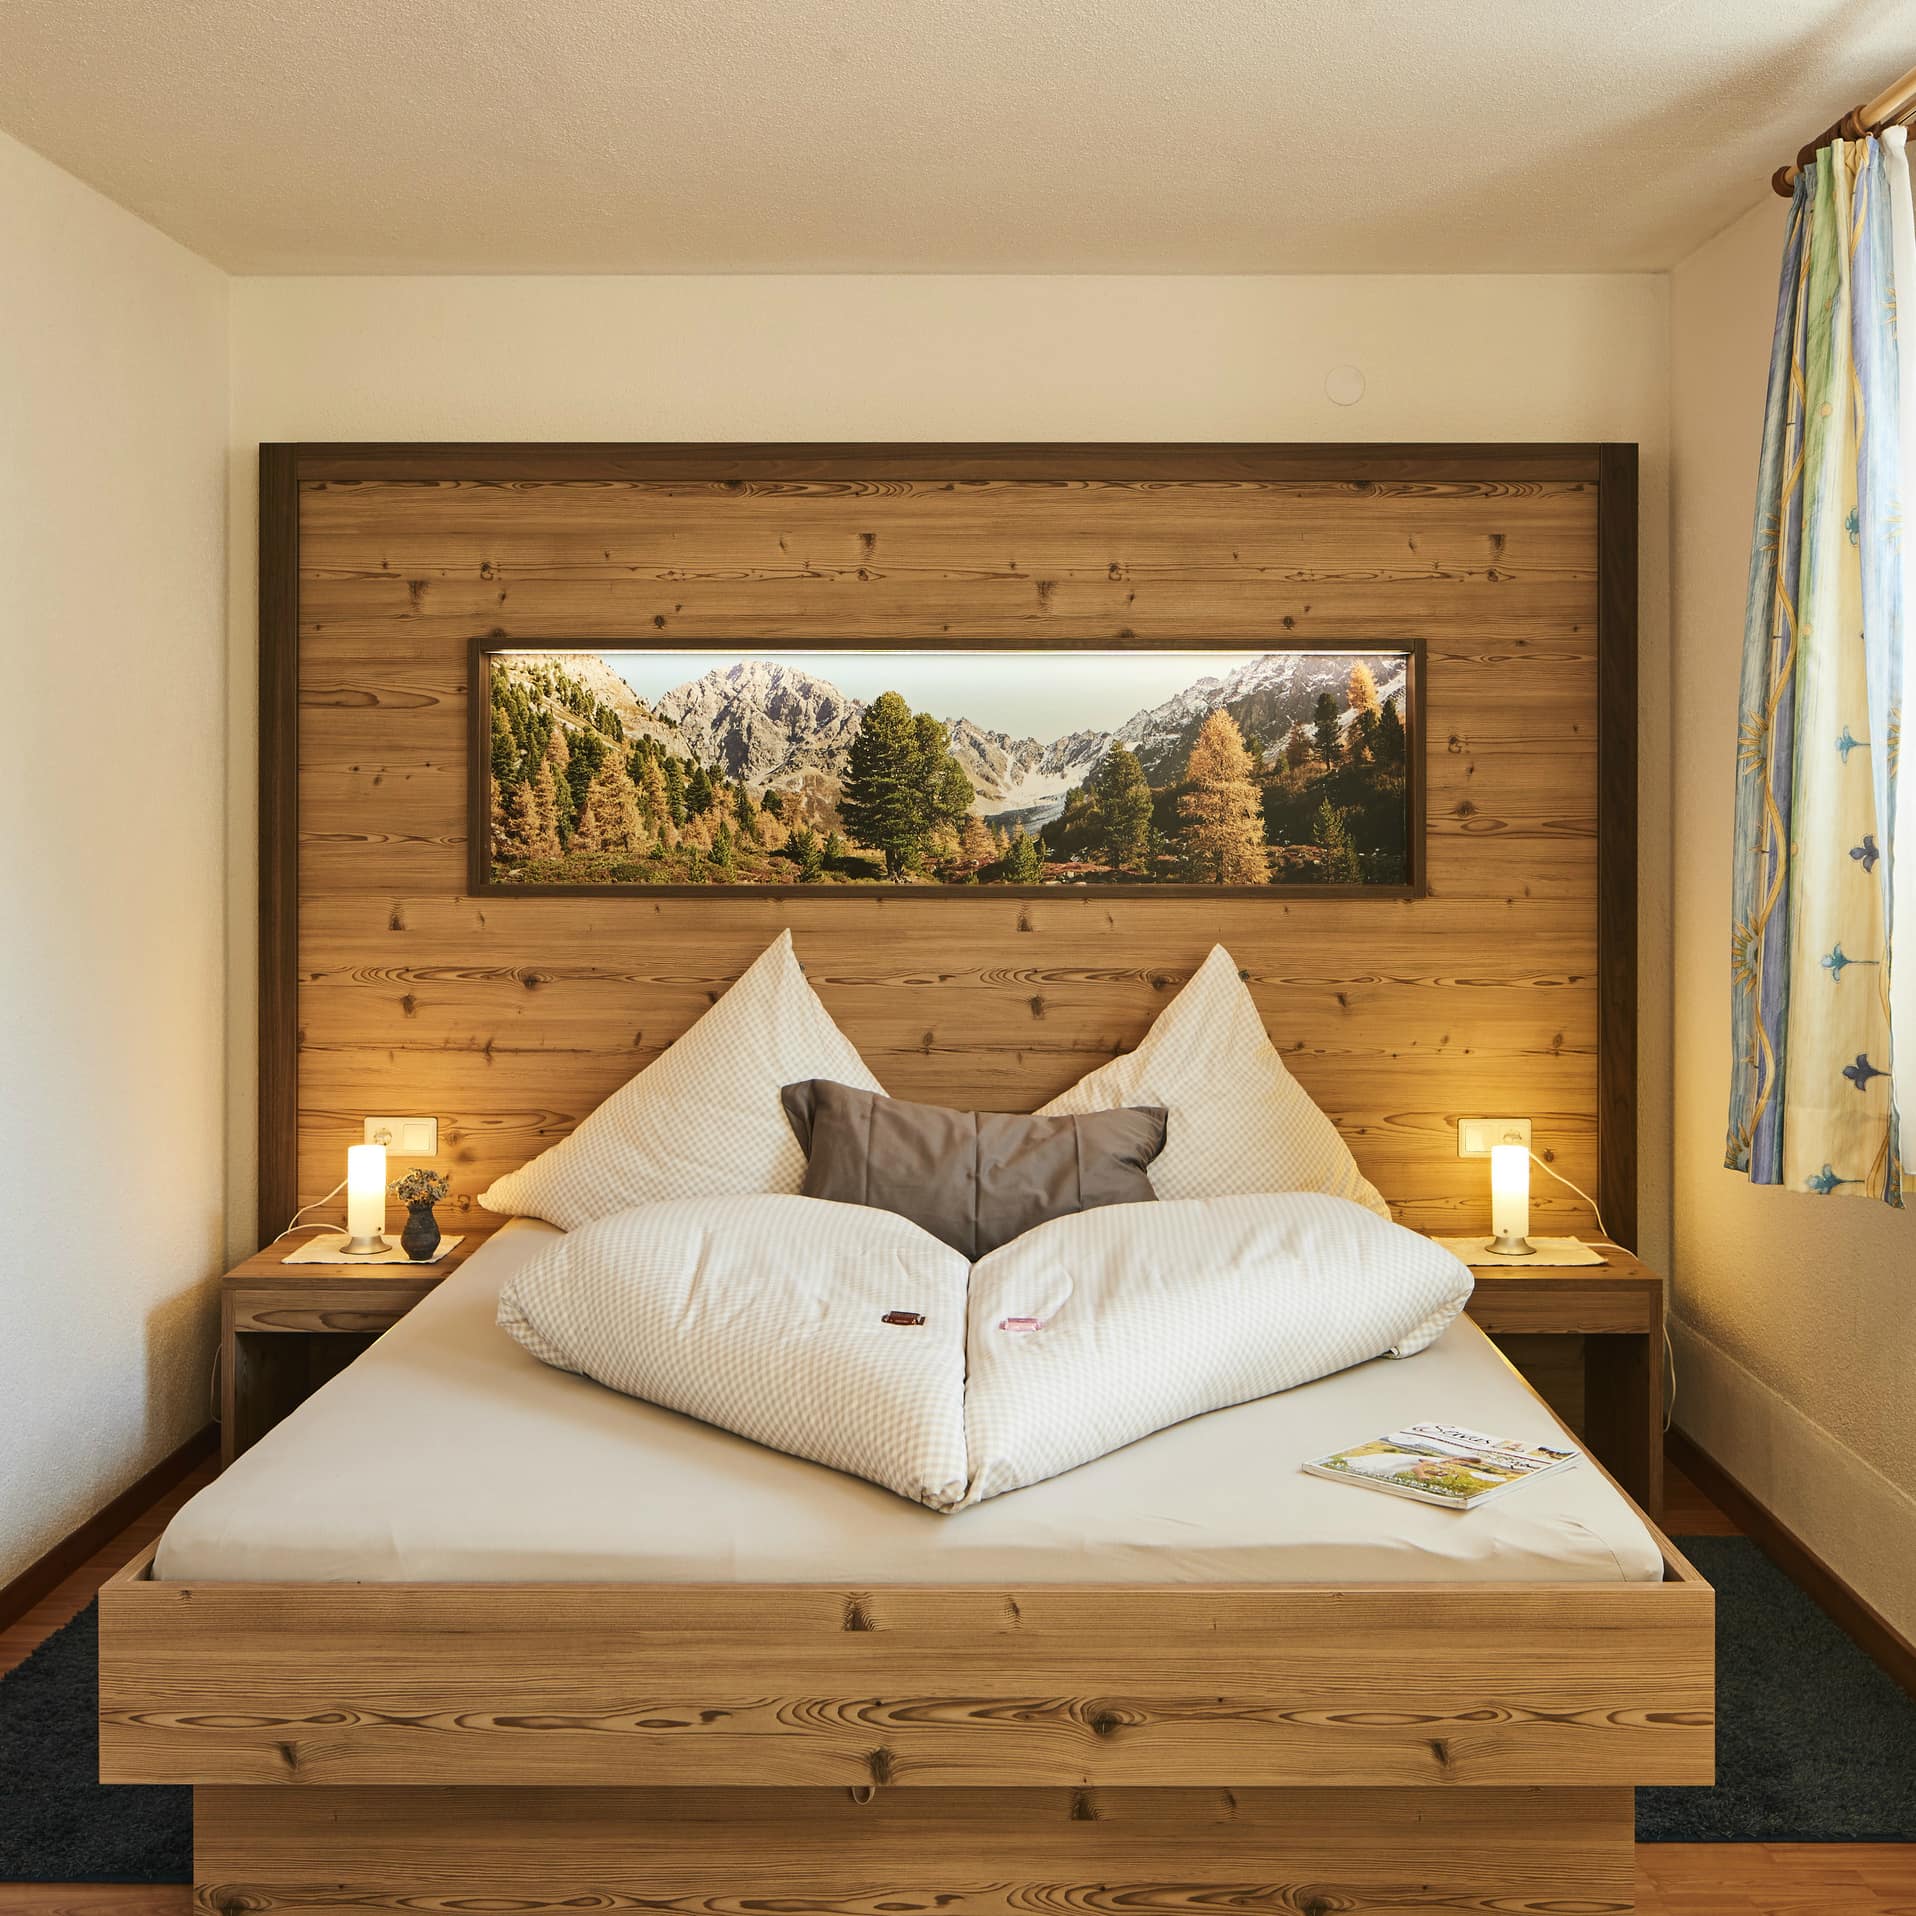 Slaapkamer in Oostenrijkse stijl met veel houten elementen